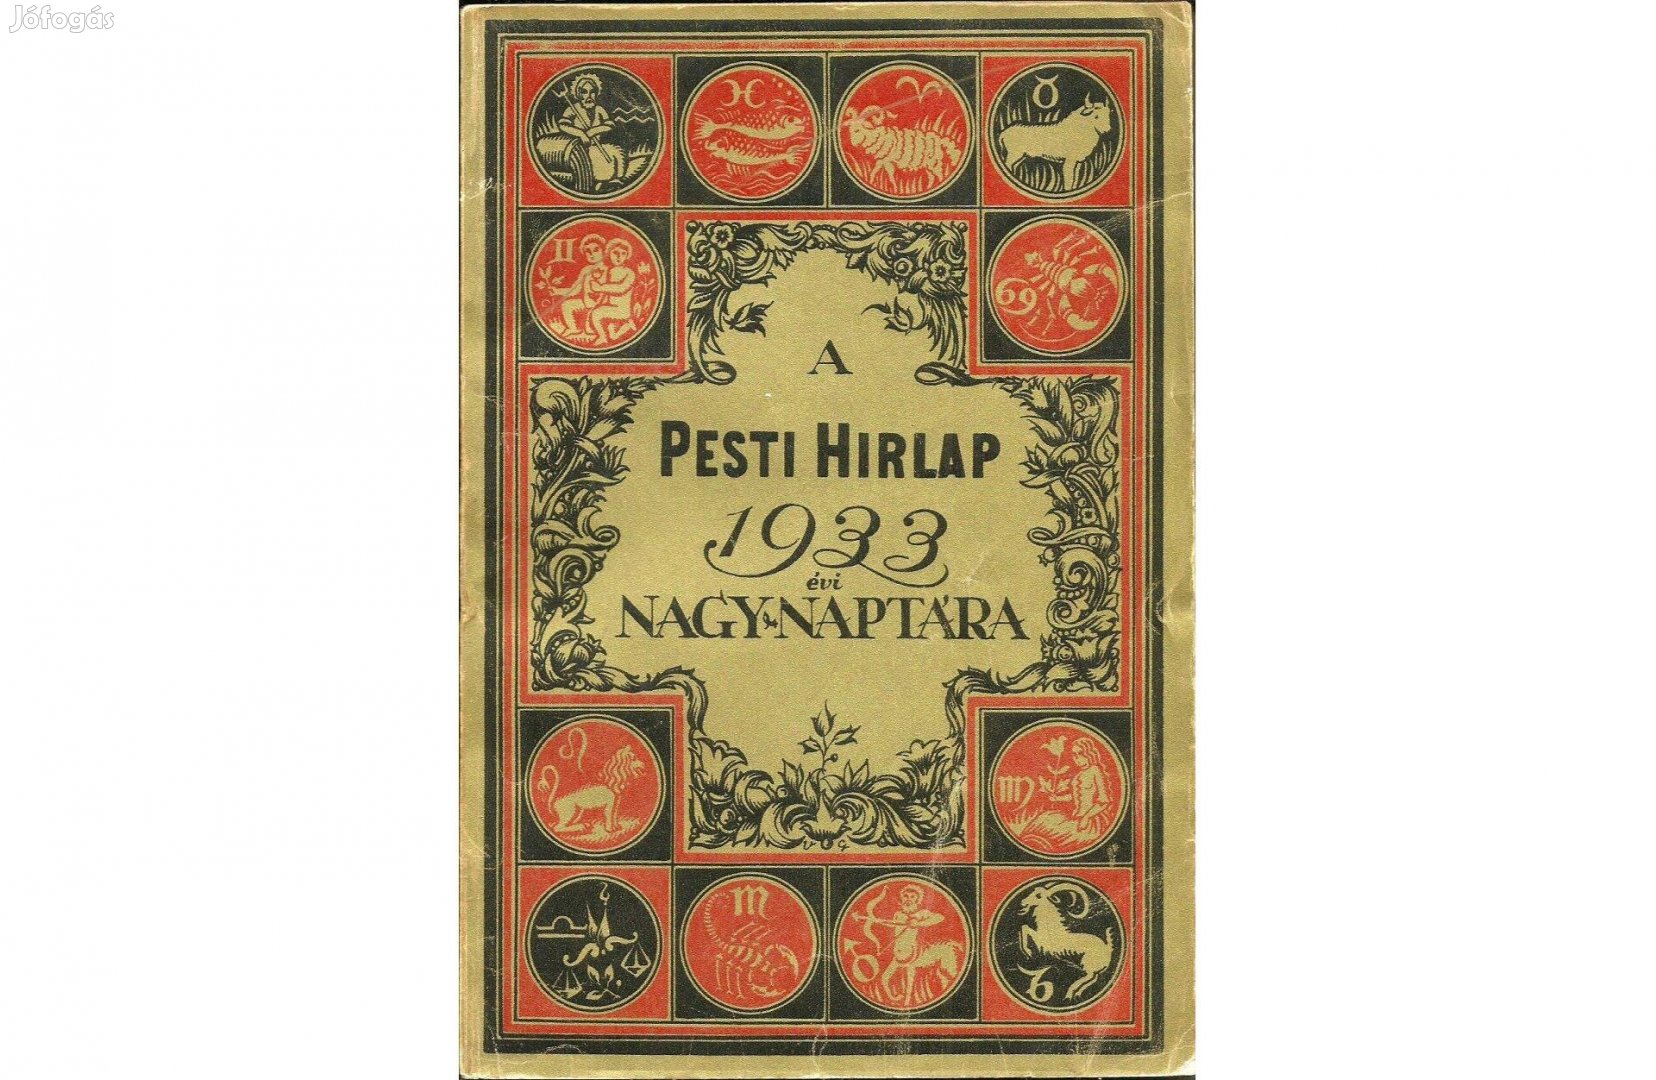 A Pesti Hírlap 1933 évi Nagynaptára